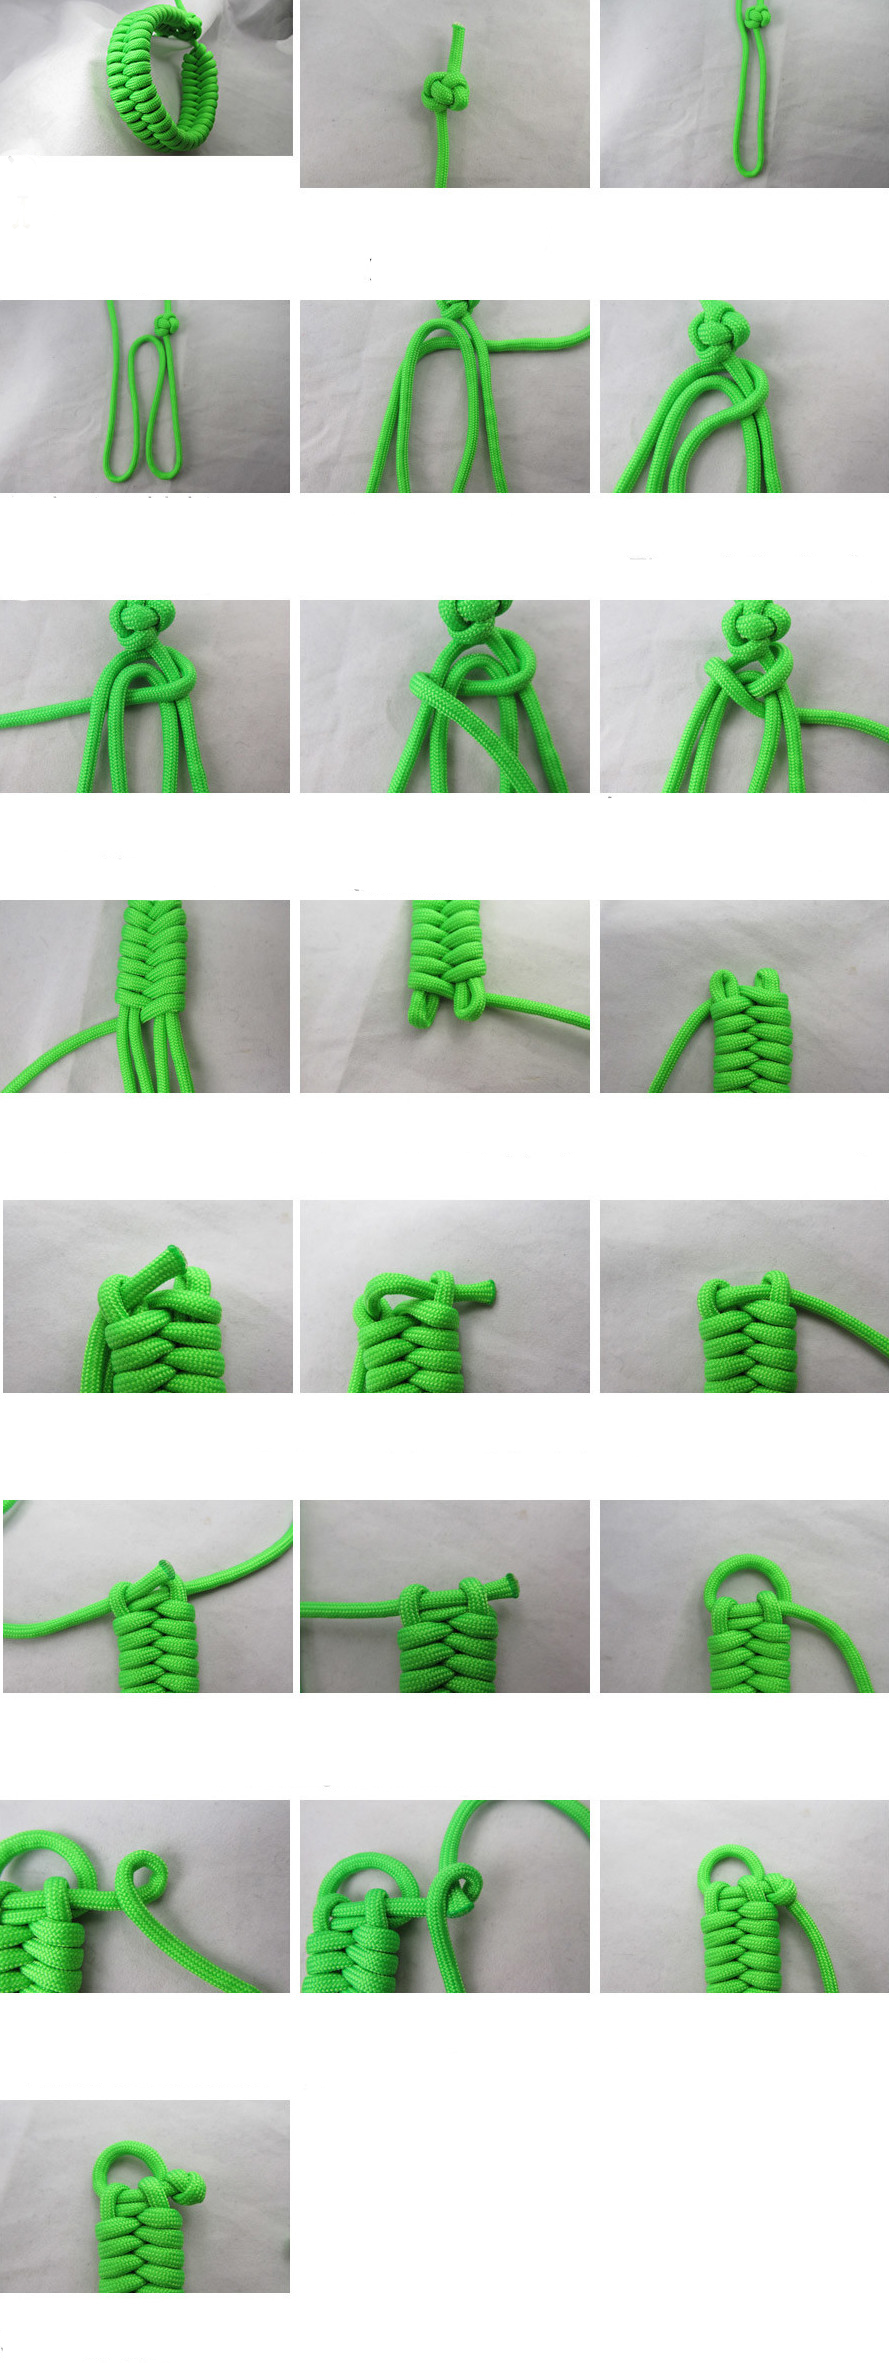 Браслеты из бисера своими руками: схемы плетения фенечек для начинающих